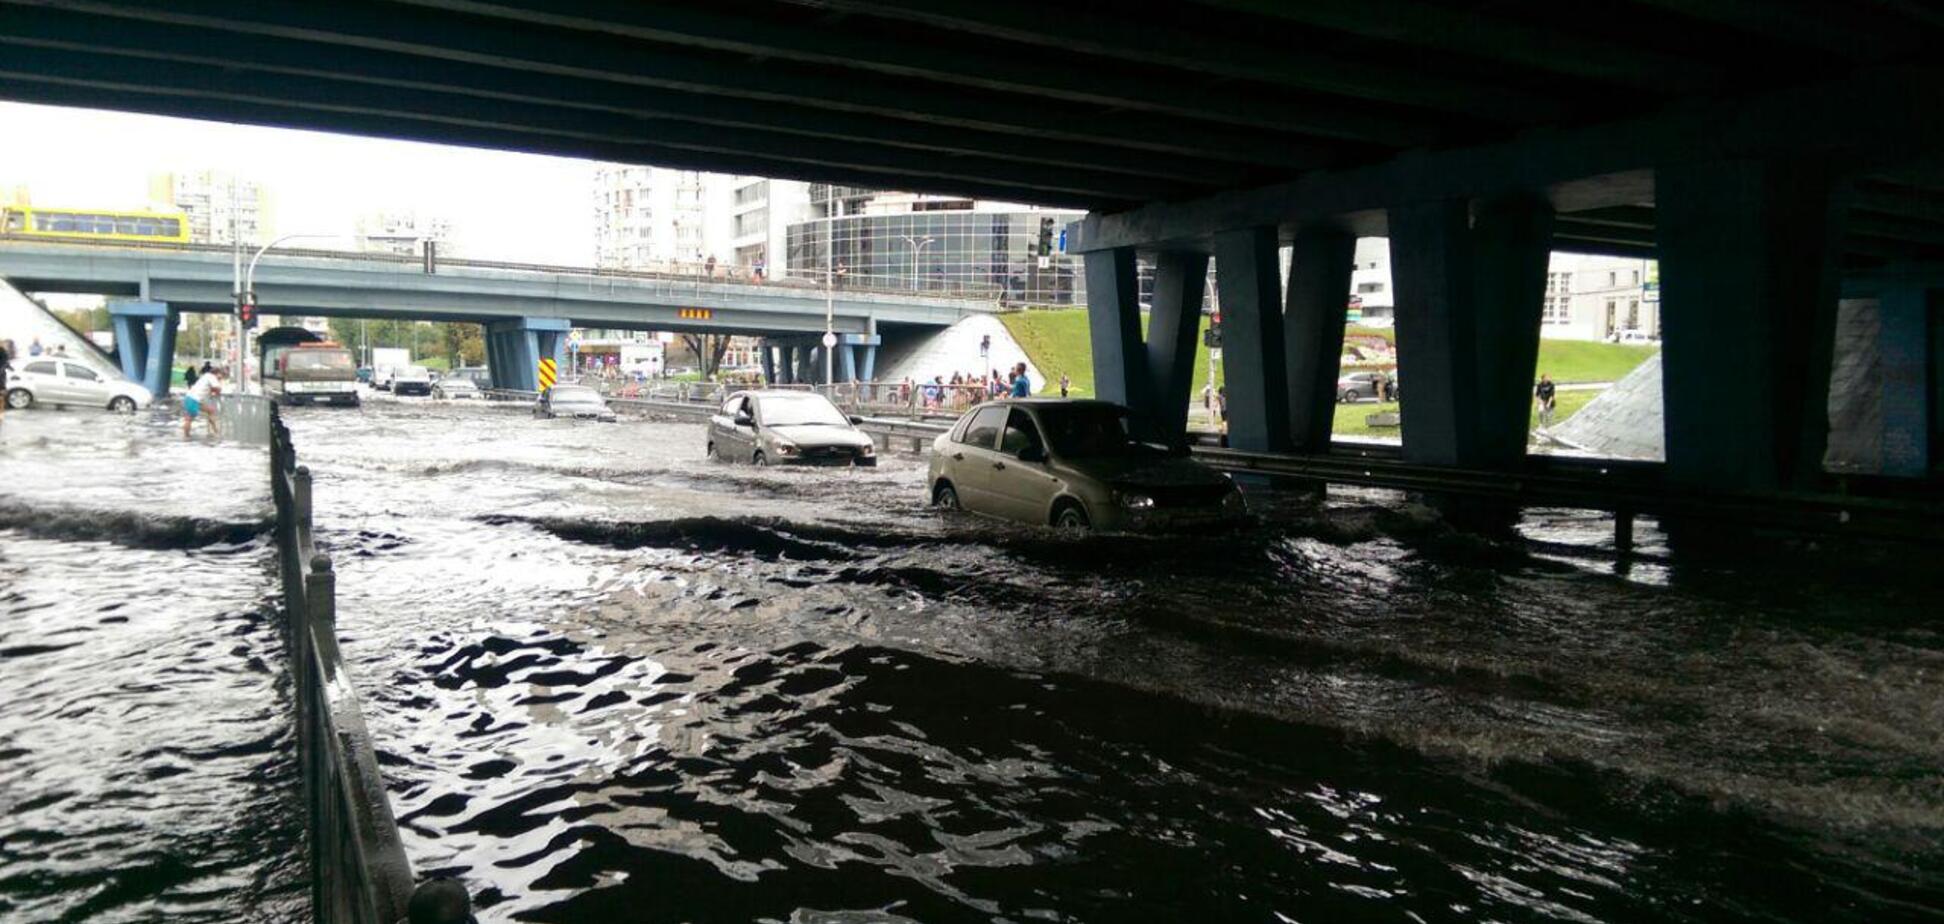 Машини тонуть: у Києві затопило вулиці потужною зливою